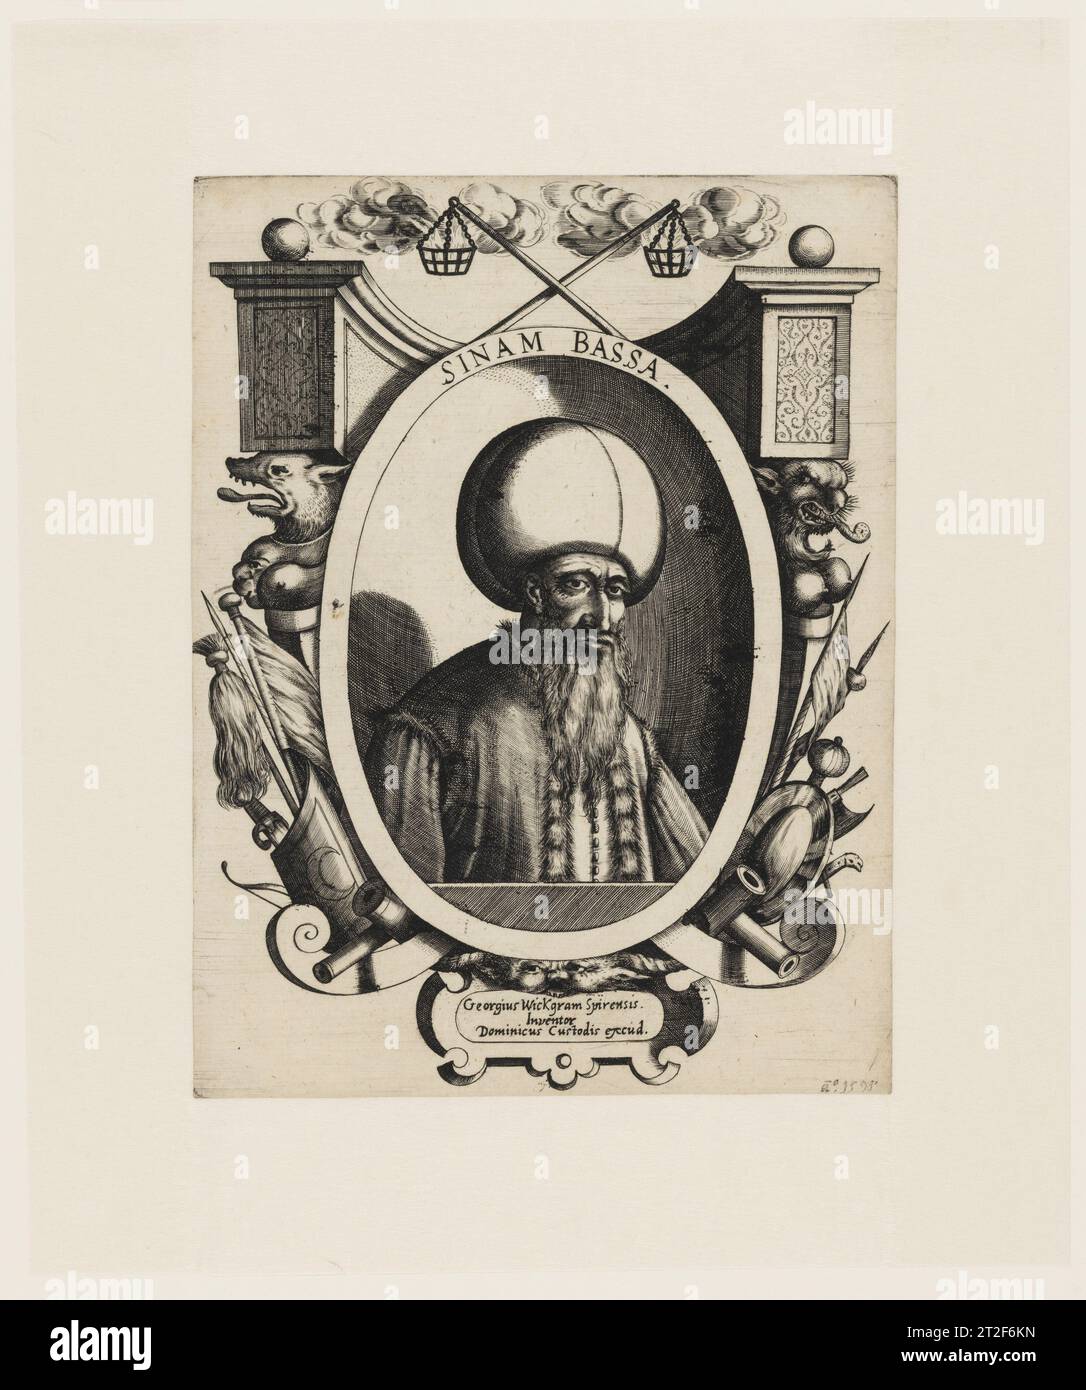 Ritratto di Sinan il grande artista ed editore Dominicus Custos designer tedesco Georgius Wickgram Spirensis sitter Sinan il grande 1595 questa è un'impressione del raro primo stato del ritratto inciso di Dominicus Custos del Sinan il grande (ca. 1521-1596). Di origine albanese, Sinan salì alla ribalta come leader militare e statista nell'Impero ottomano, diventando Gran Visir nel 1580 e mantenendo questo ruolo per il resto della sua vita. Da parte sua, Custos era un pittore e incisore nato ad Anversa che, come ha chiarito la recente ricerca, trascorse del tempo a Innsbruck e in Italia Foto Stock